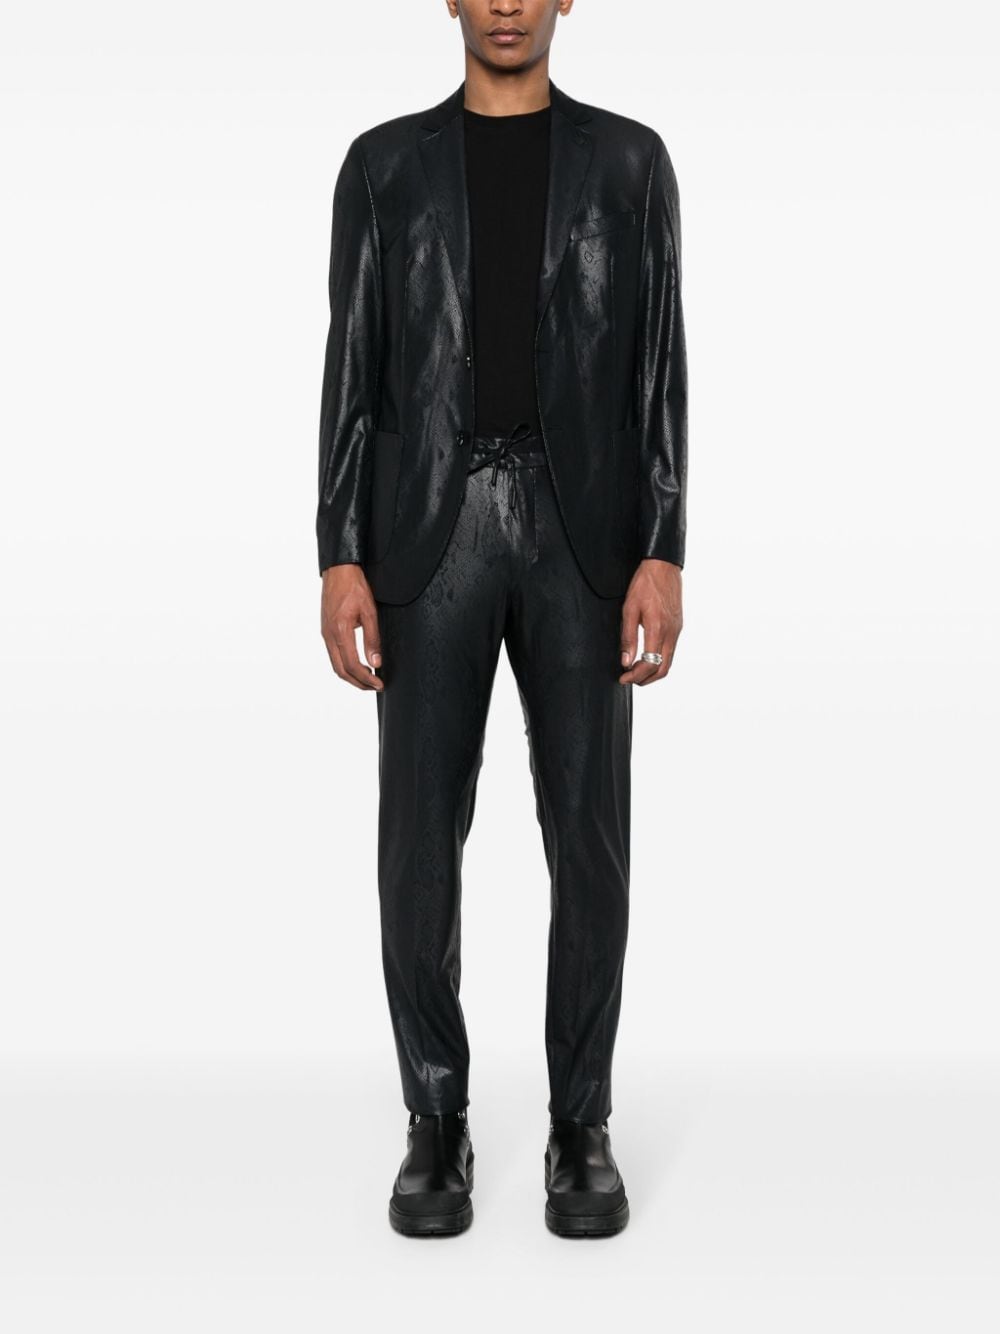 Karl Lagerfeld Slim-fit broek Zwart